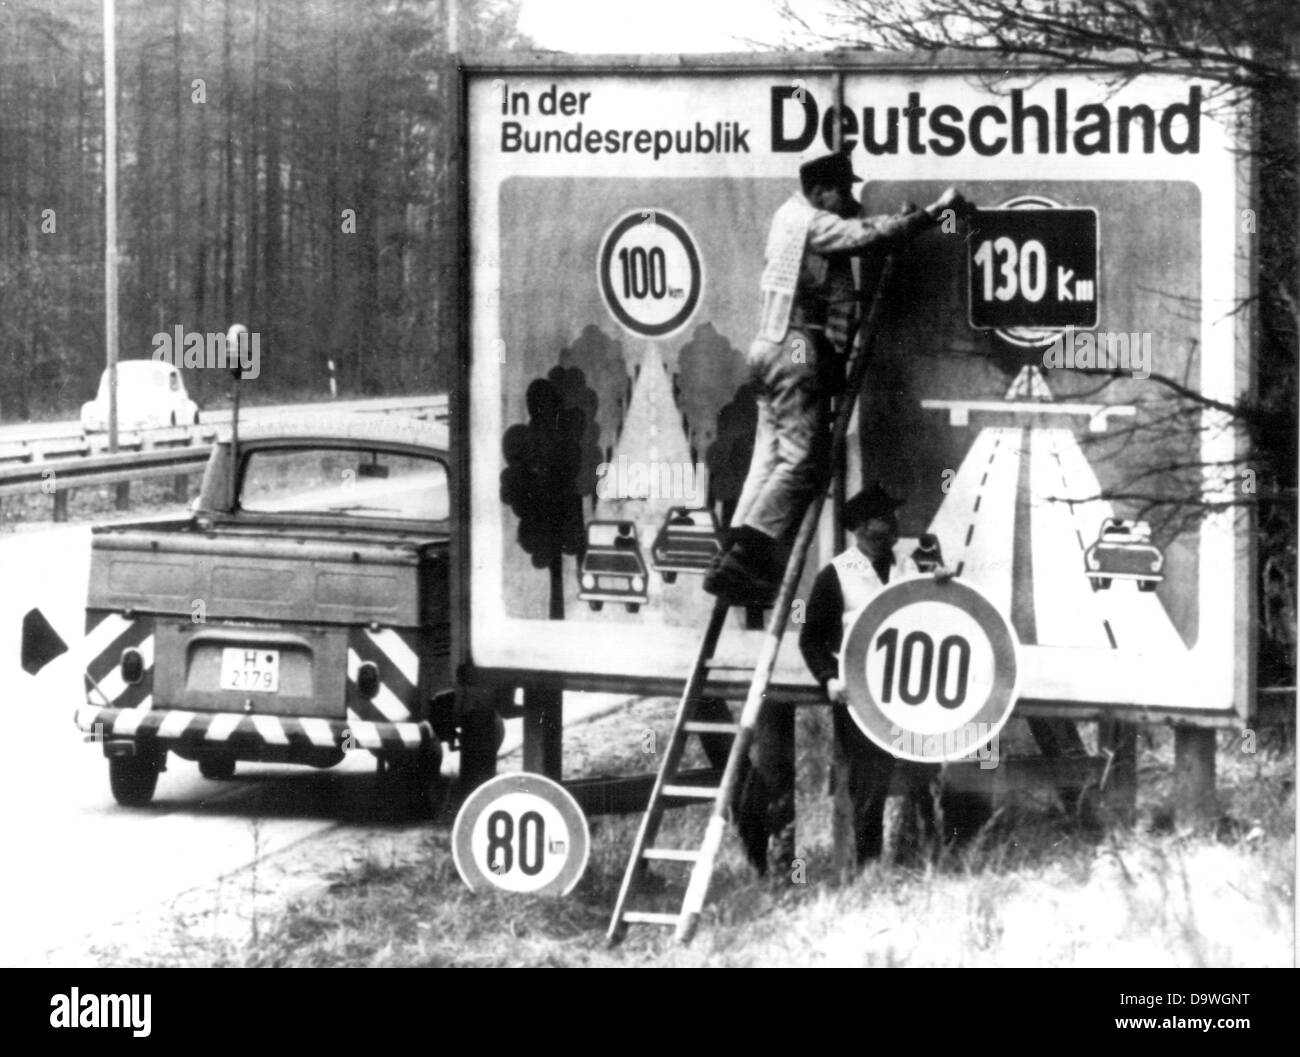 Les employés de l'autoroute les autorités de maintenance mettre des panneaux rappelant la limitation de vitesse de 130 Comité consultatif sur le 14 mars en 1974. Banque D'Images